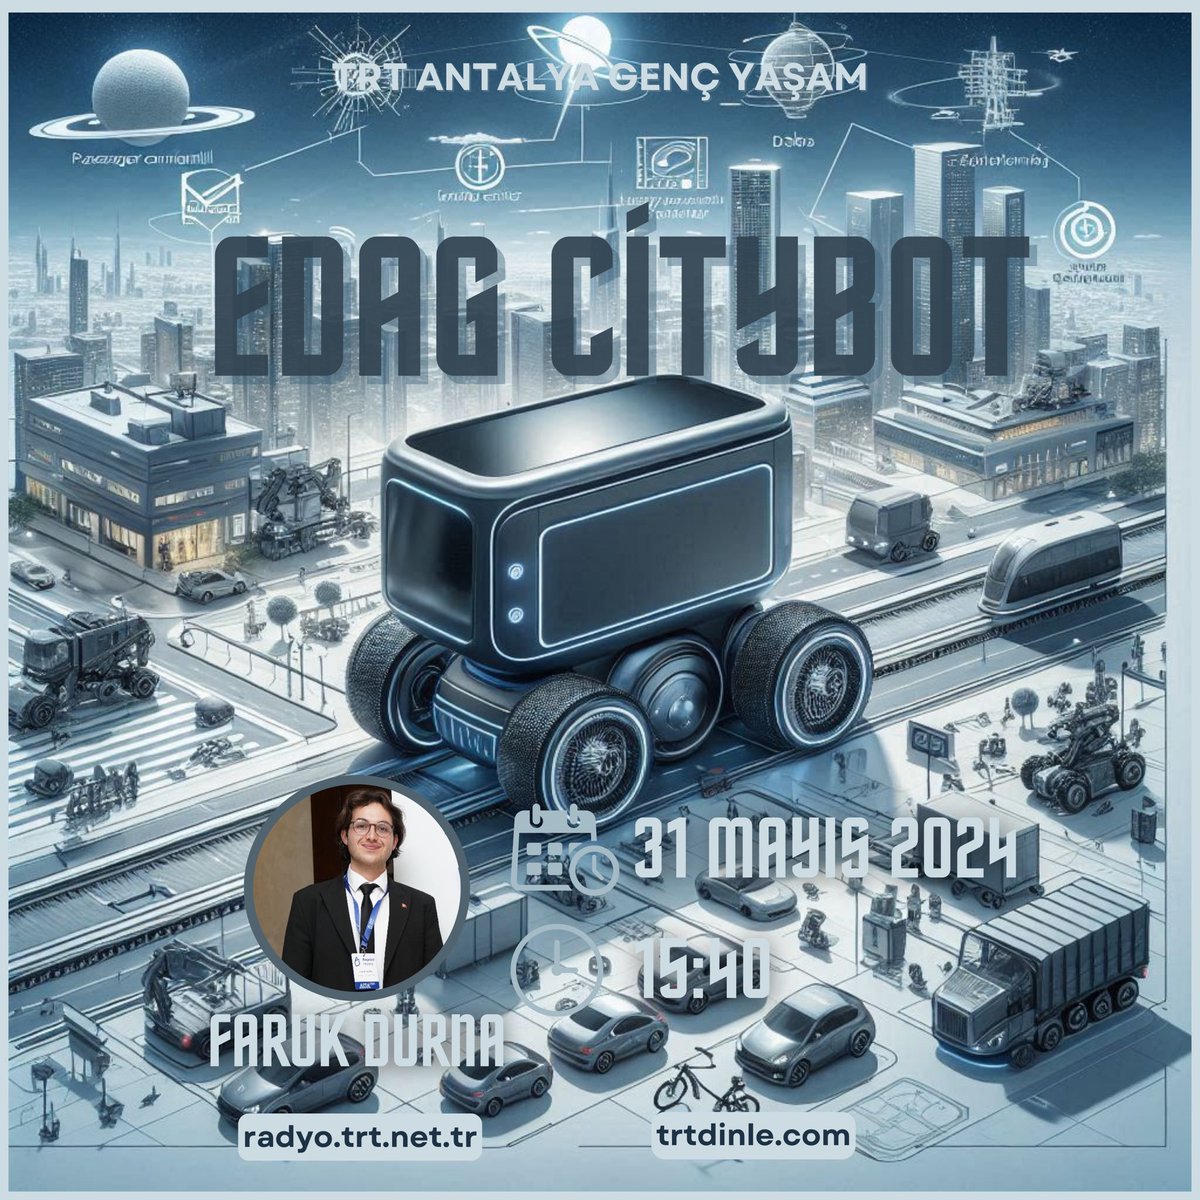 🗓️ 31 Mayıs Cuma günü saat 15.40’ta, TRT Antalya Genç Yaşam programında 'EDAG CityBot: Geleceğin Kentsel Mobilite Çözümü' hakkında konuşacağım.

#EDAG #CityBot #KentselMobilite #GeleceğinŞehirleri #TRT